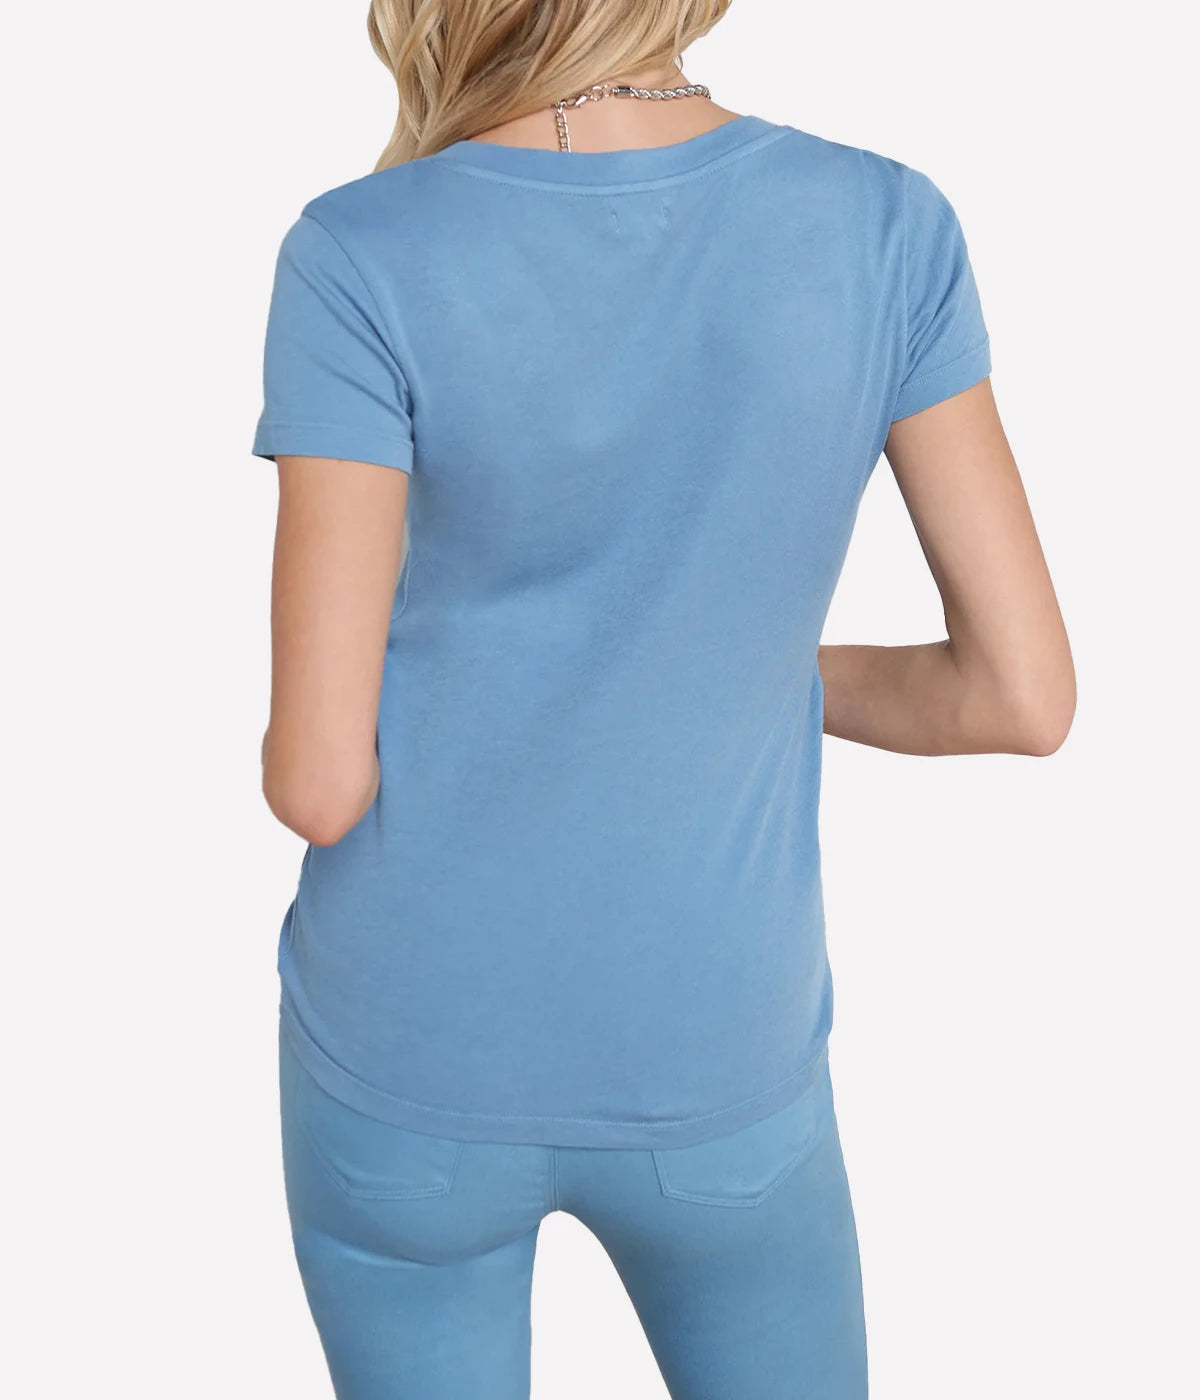 Becca Short Sleeve V Neck T-Shirt in Blue Mist